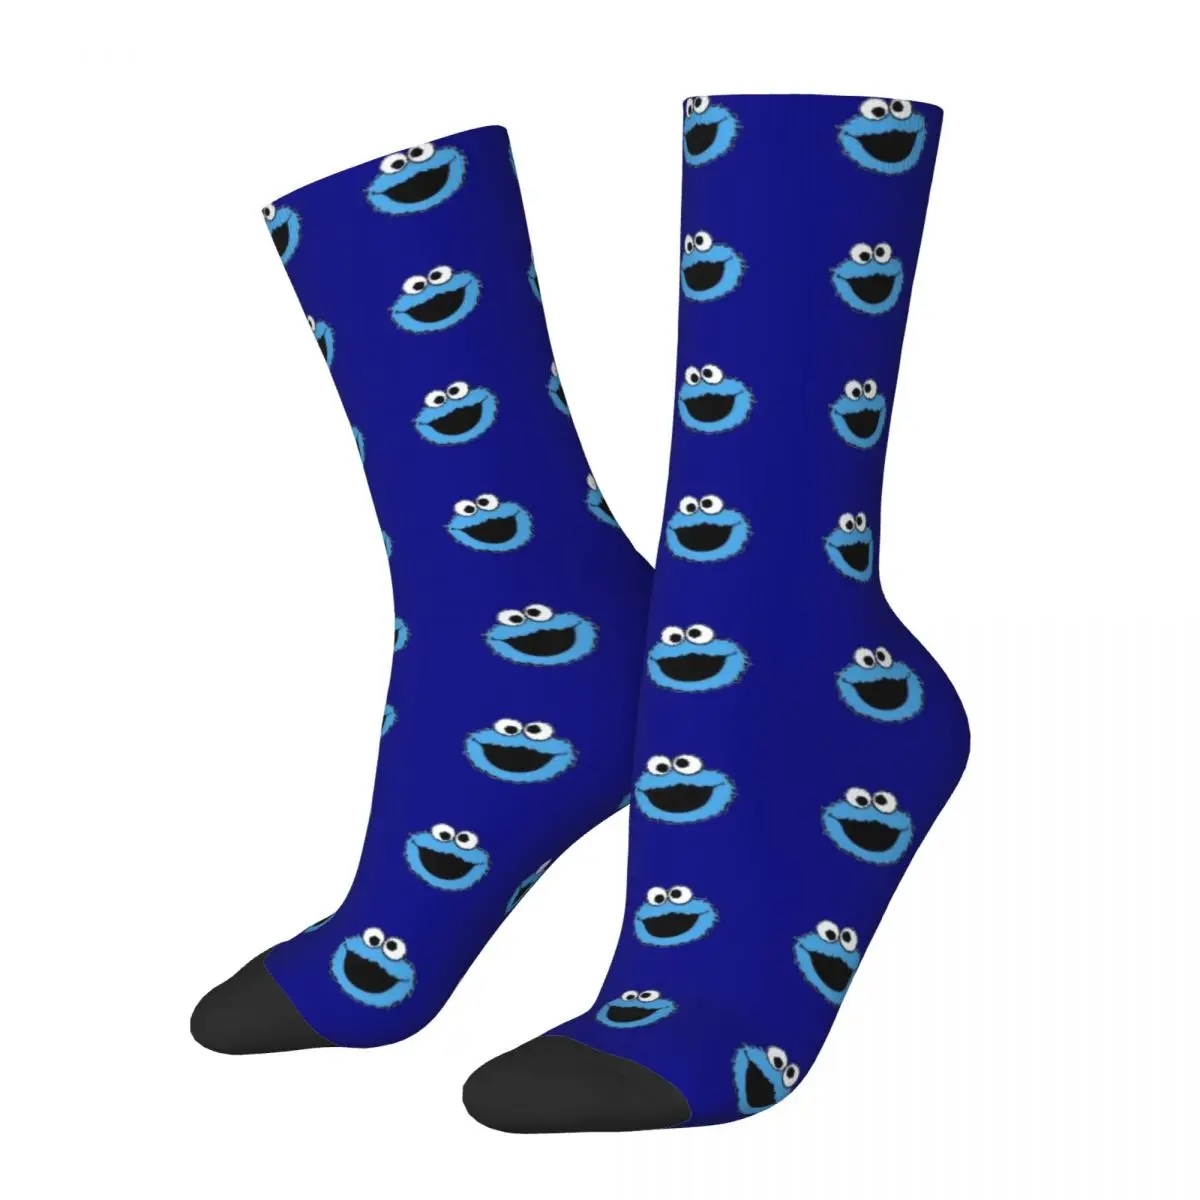 

Sesame Street Cookie Monster Funny Socks for Women Men Novelty Street Style Crazy Spring Summer Socks Gifts